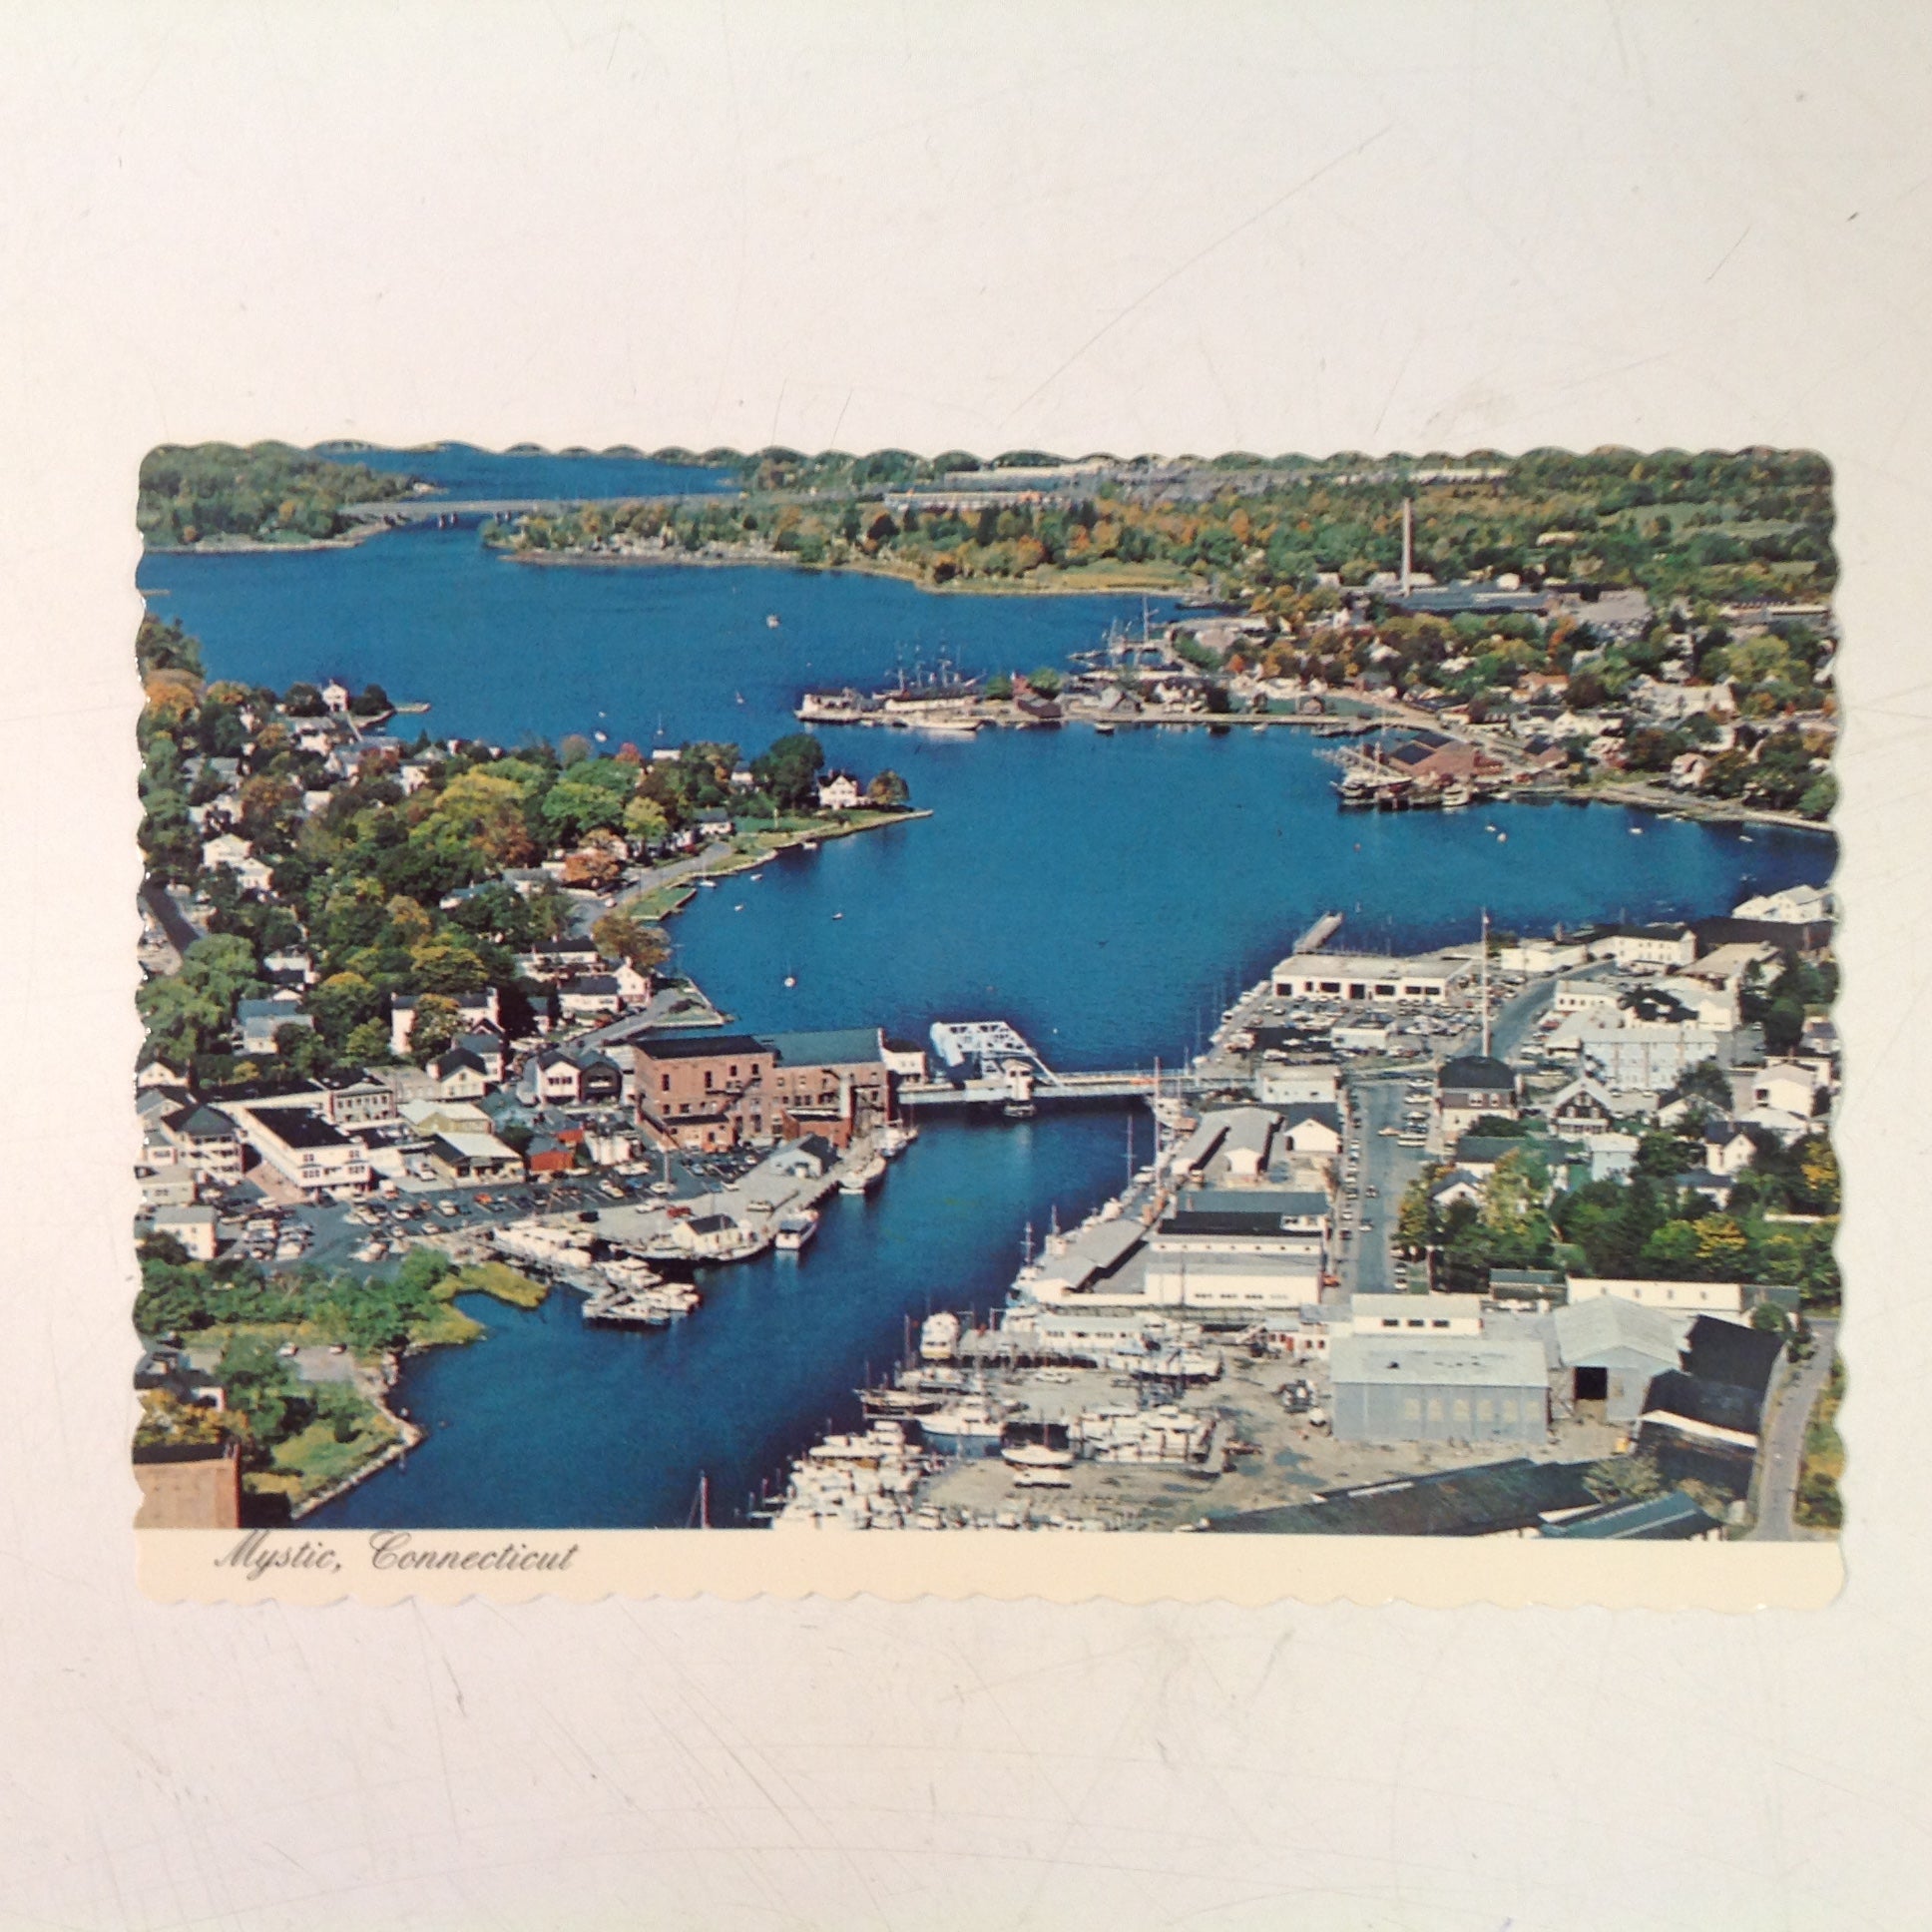 Vintage Deter Sovereign Book & Tackle Shop Souvenir Scalloped Edge Color Postcard Aerial View Mystic Connecticut